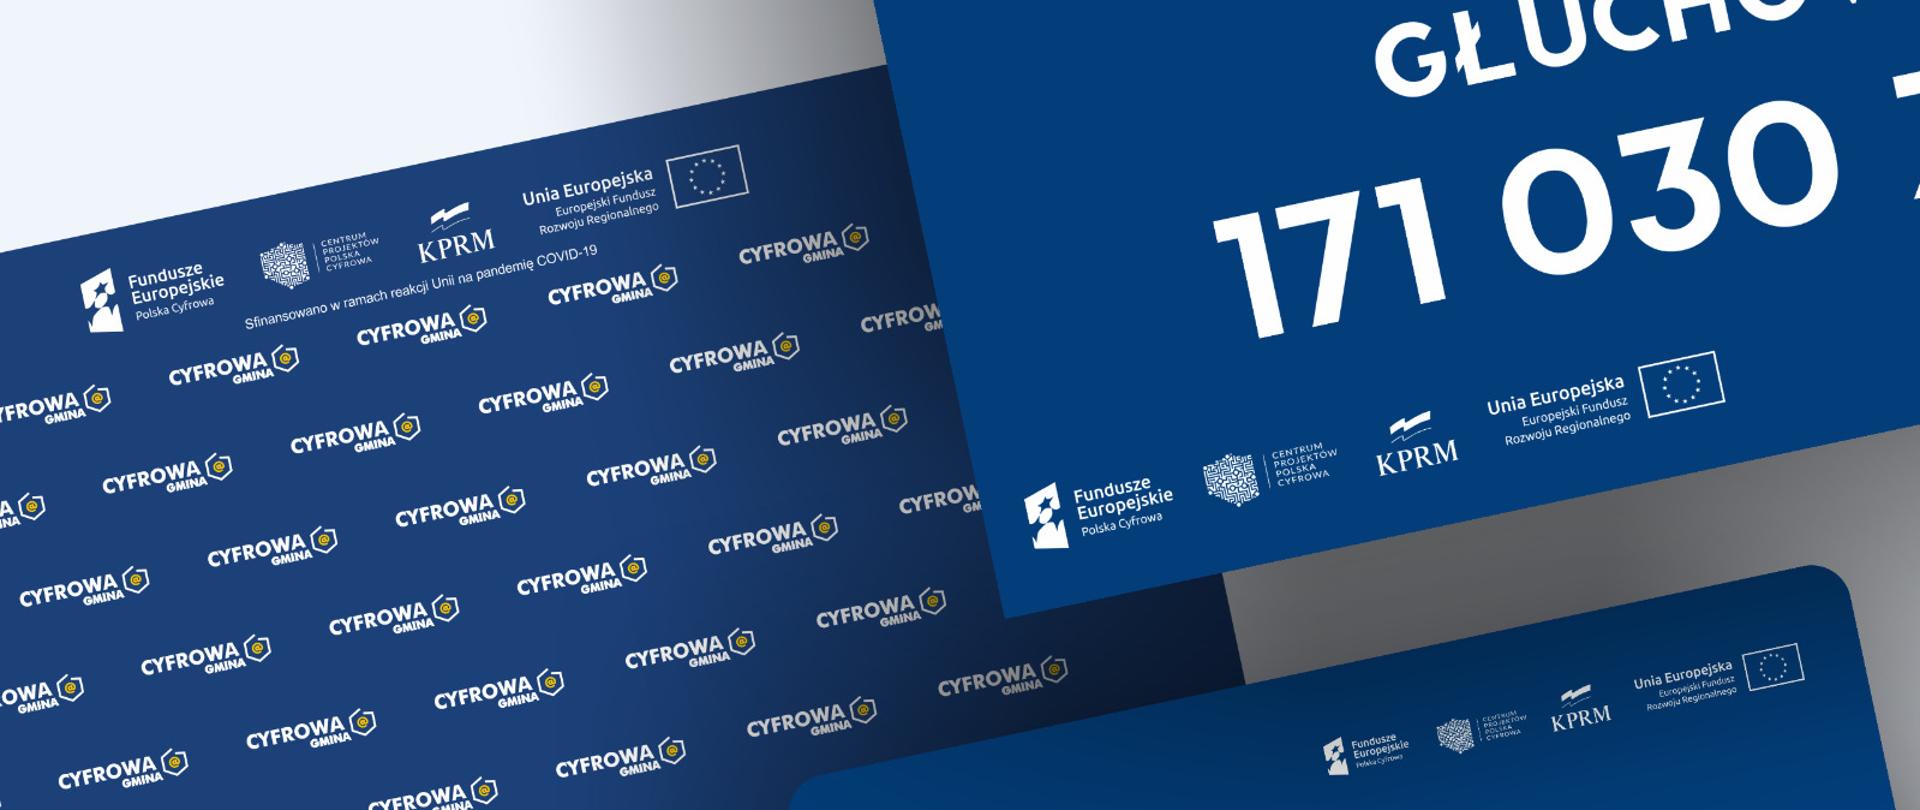 Grafiki z unijnymi oznaczeniami programu Cyfrowa Gmina.